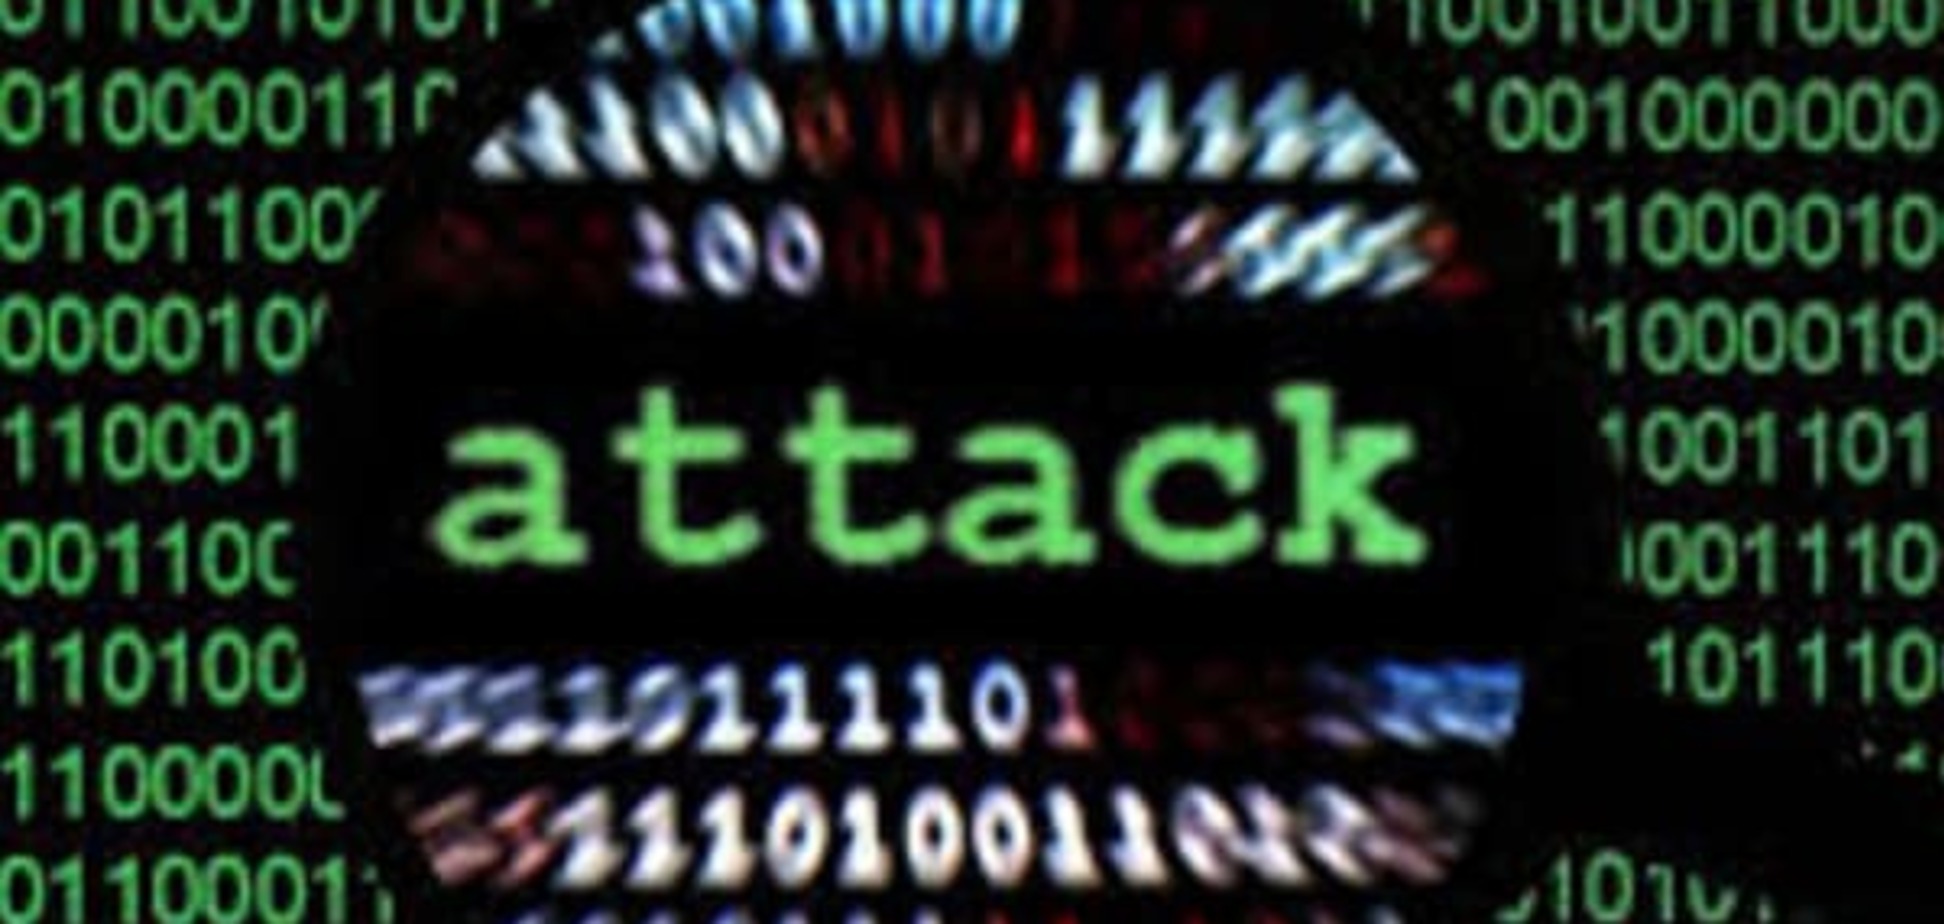 Как избежать хакерских атак: советы военных из США